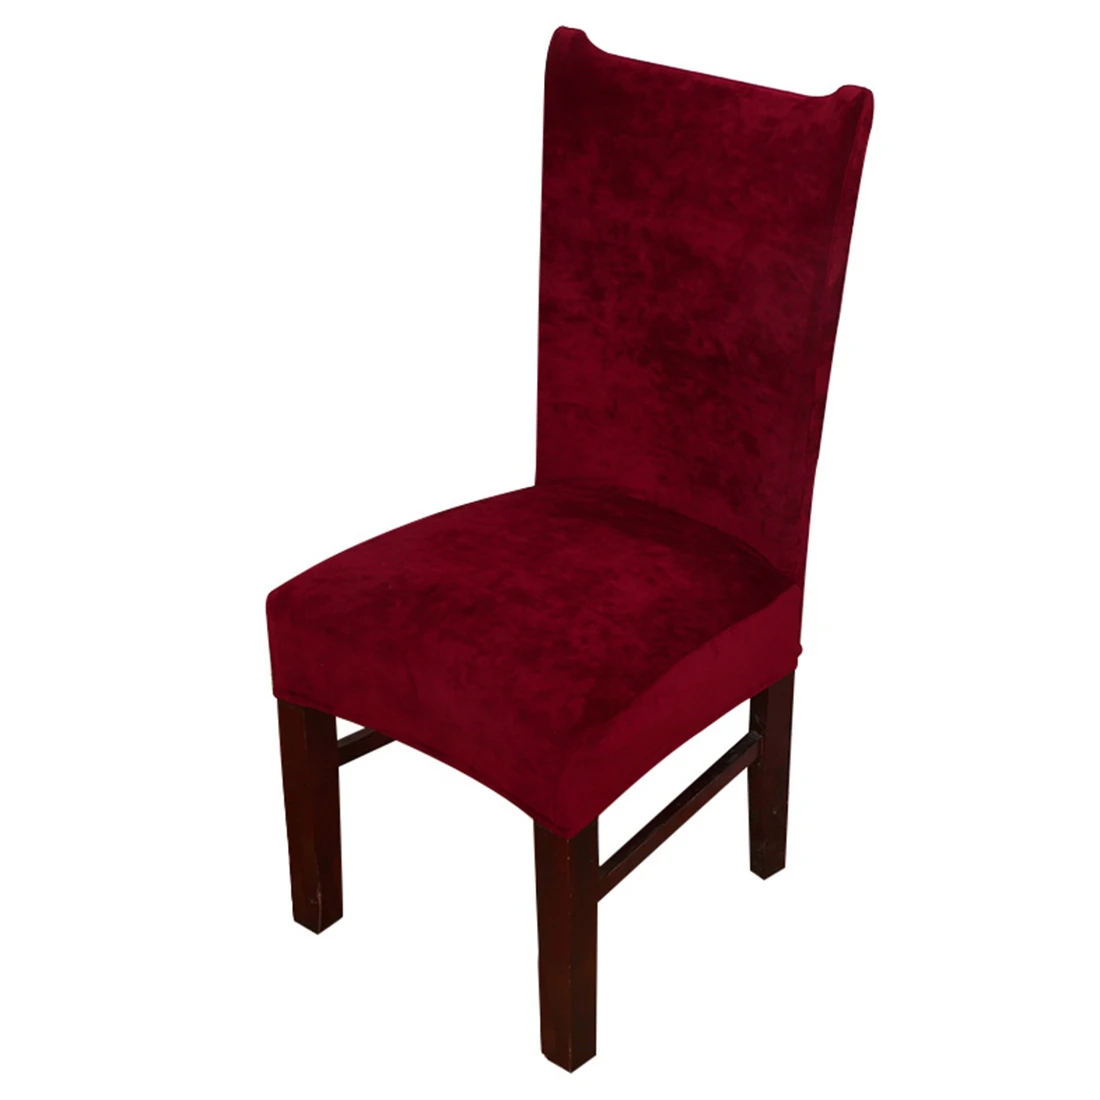 2 шт./лот чехлы на кресла стрейч для столовой протектор утолщенный съемный чехол для стула чехол для сиденья для дома Свадебные товары для стула - Цвет: Style 7